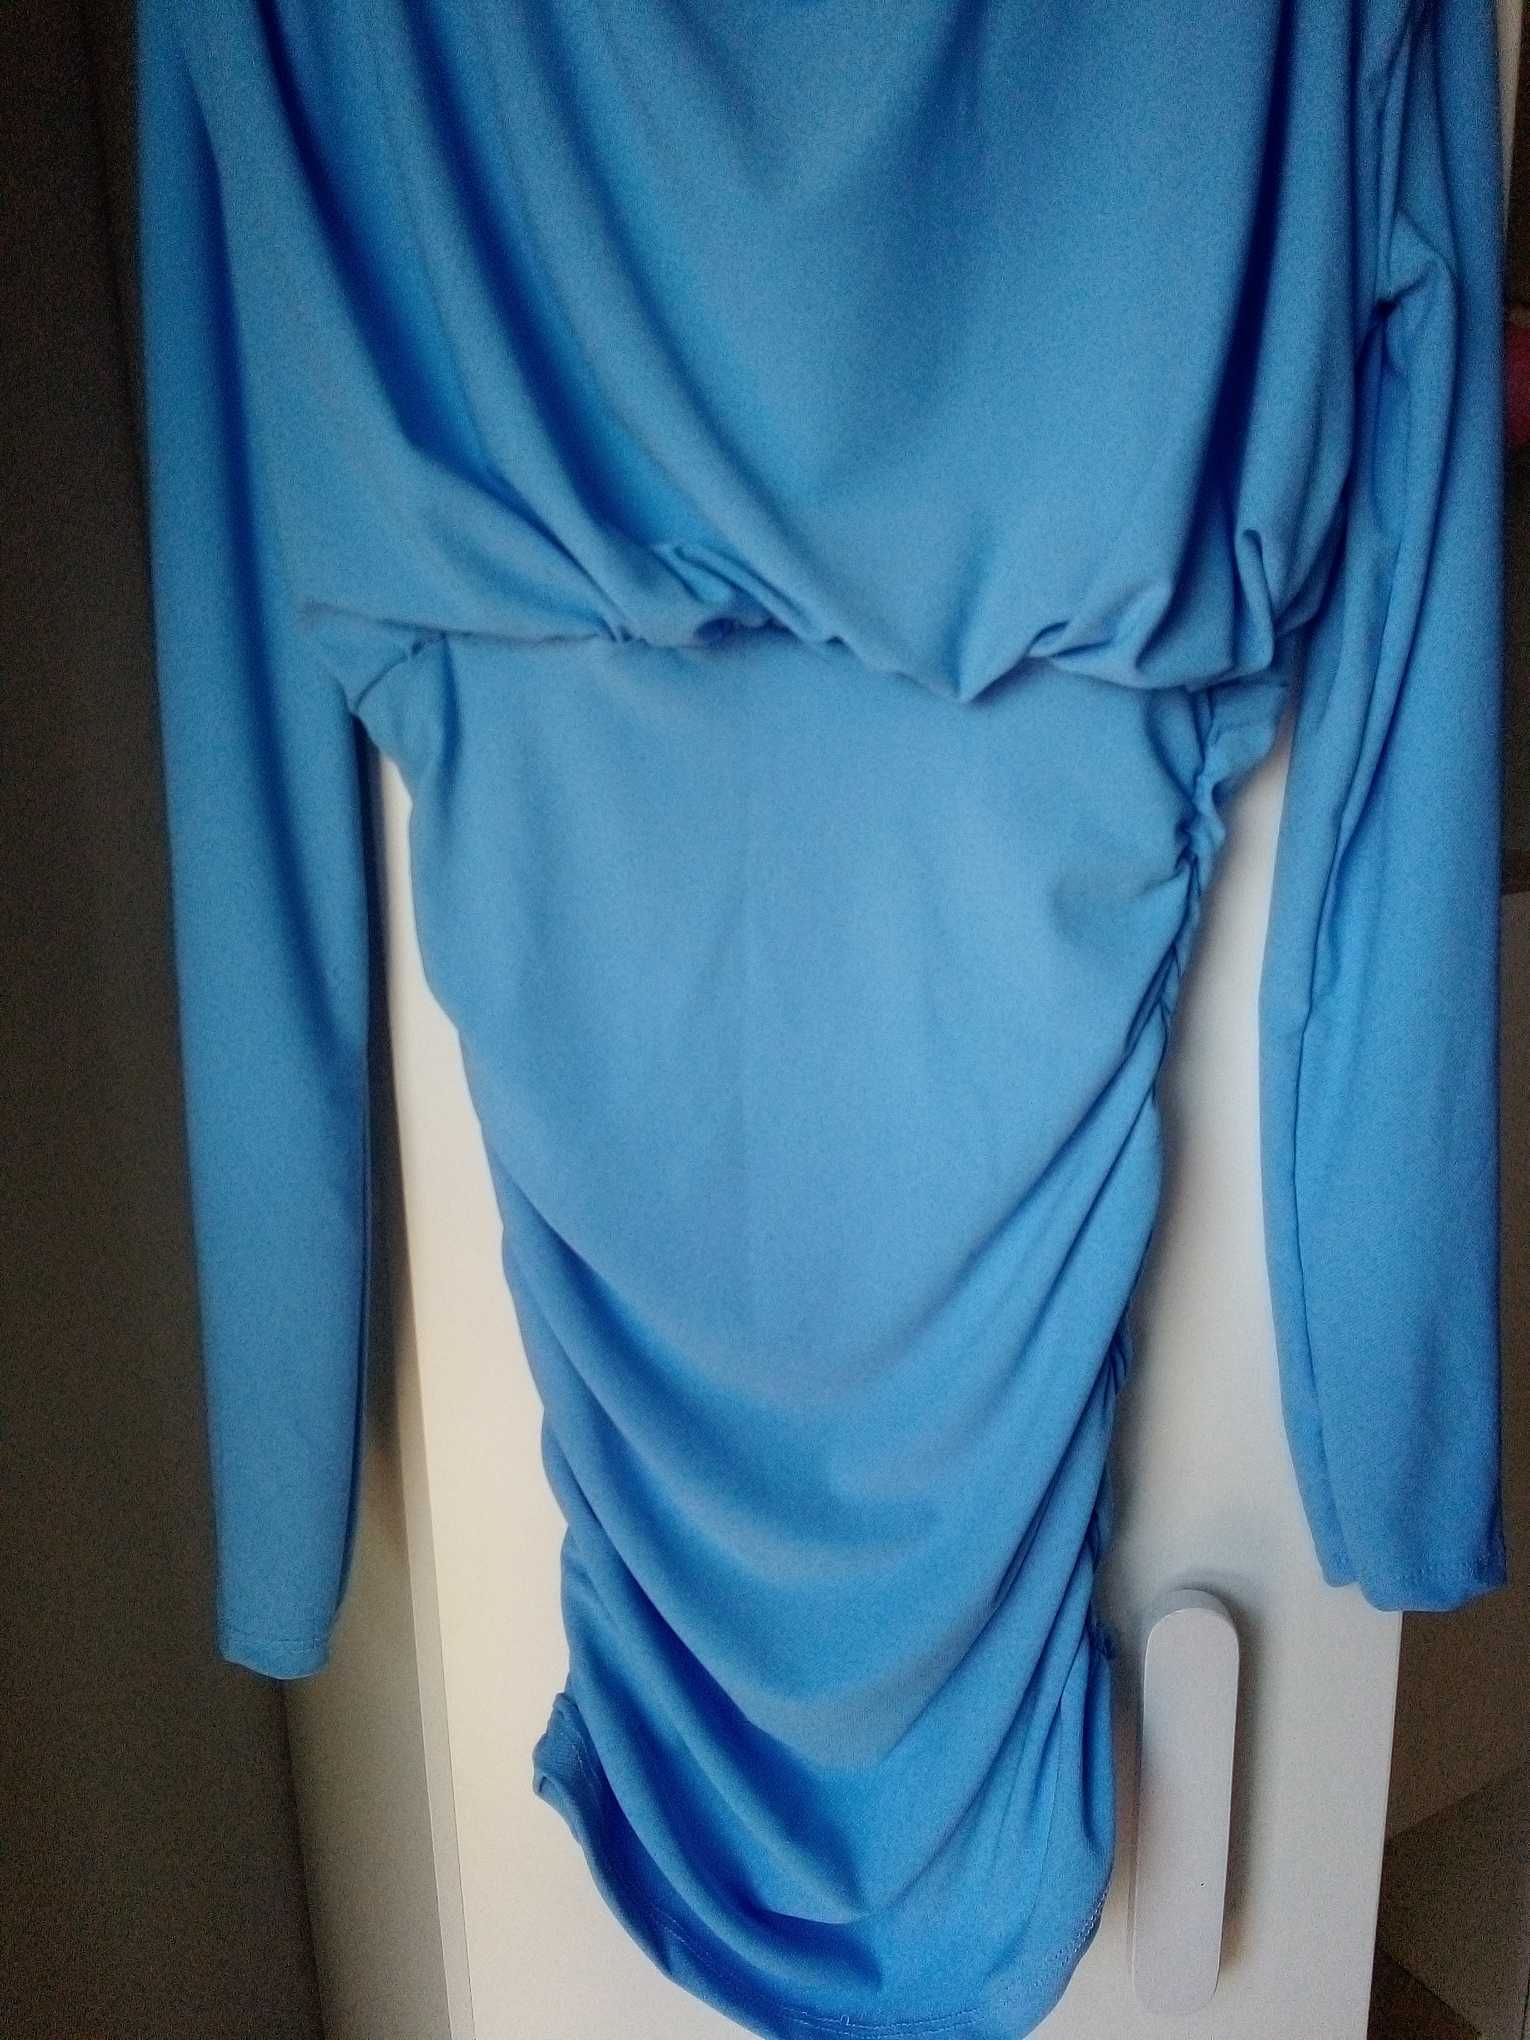 Błękitna sukienka suknia rozmiar S komunia chrzest impreza 18-stka